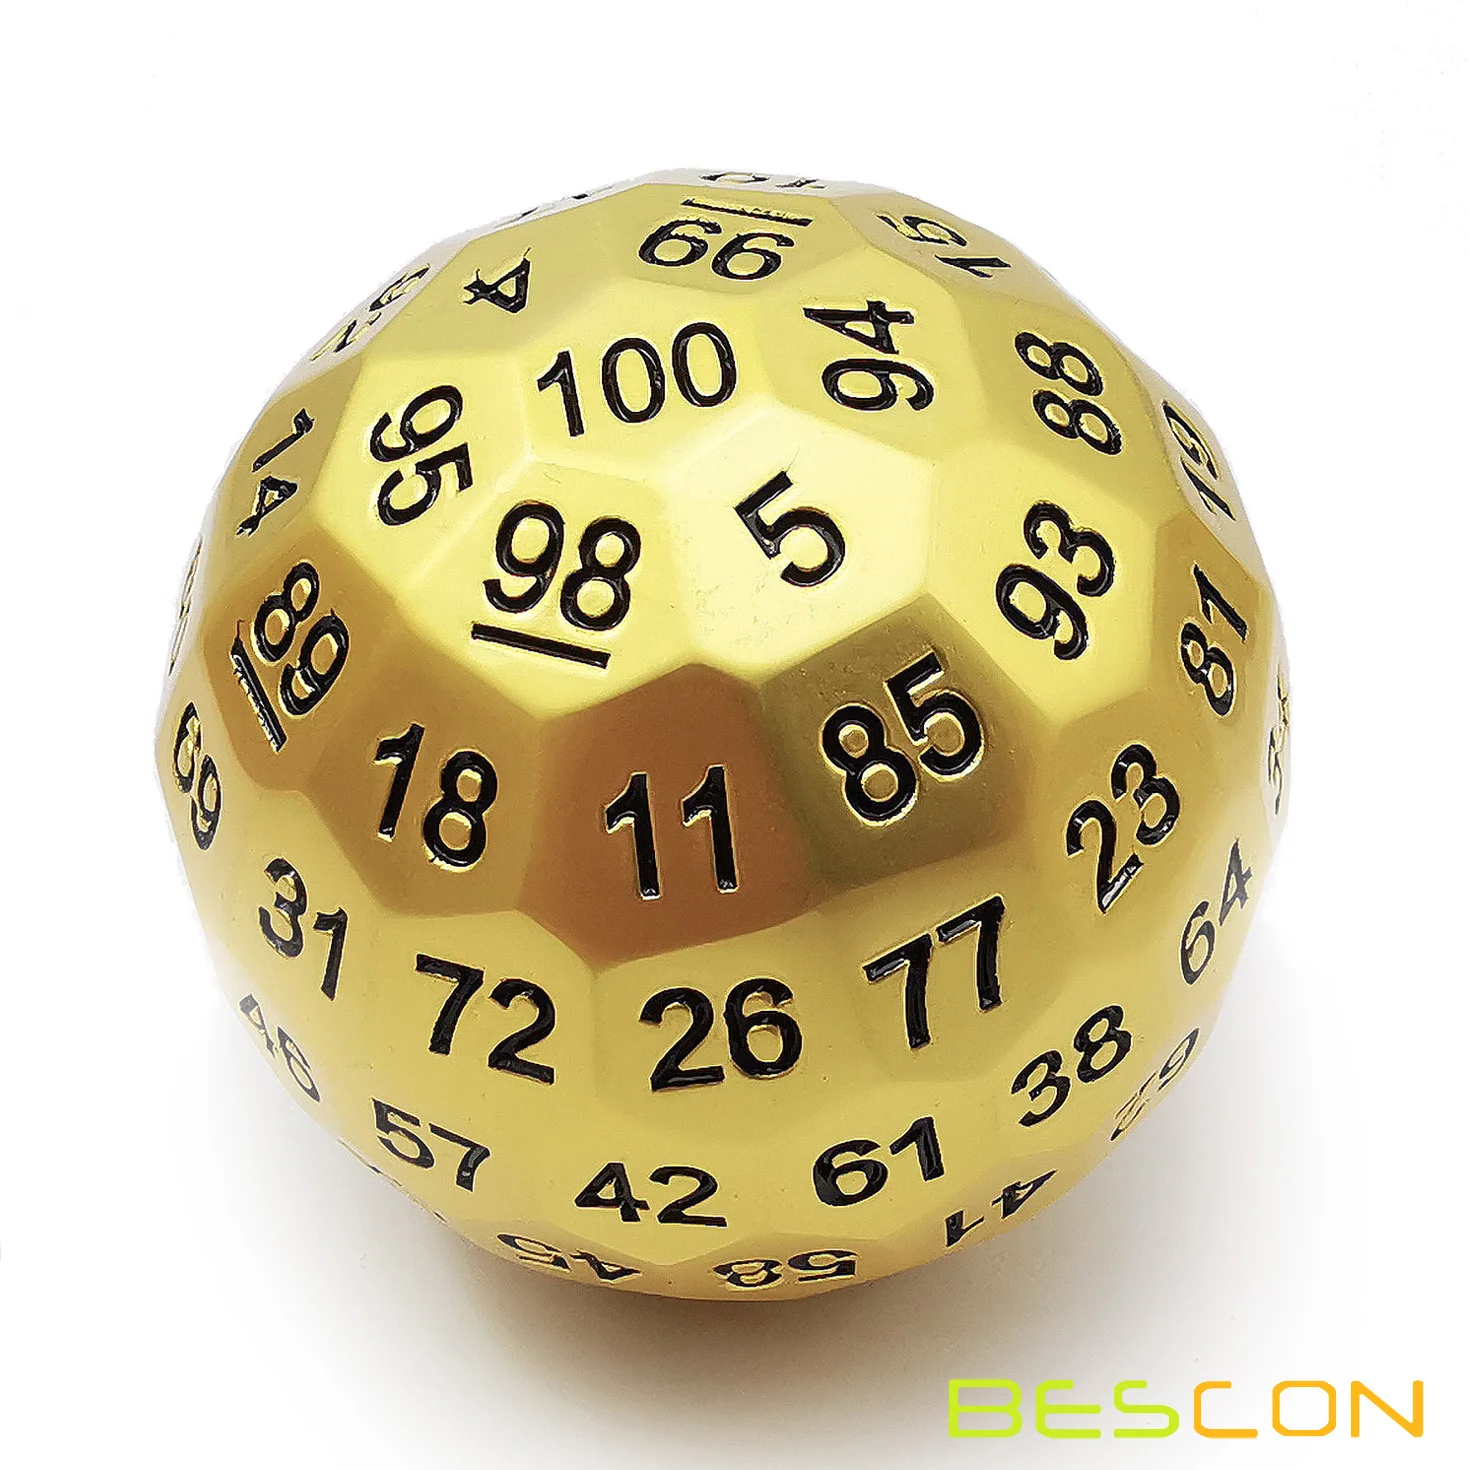 Bescon معدن صلب 100 جانب النرد ، لعبة النرد D100 ، عملاق متعدد السطوح المعادن 100 الجانبين النرد 50 مللي متر في القطر (1.97in) ، مات الذهبي